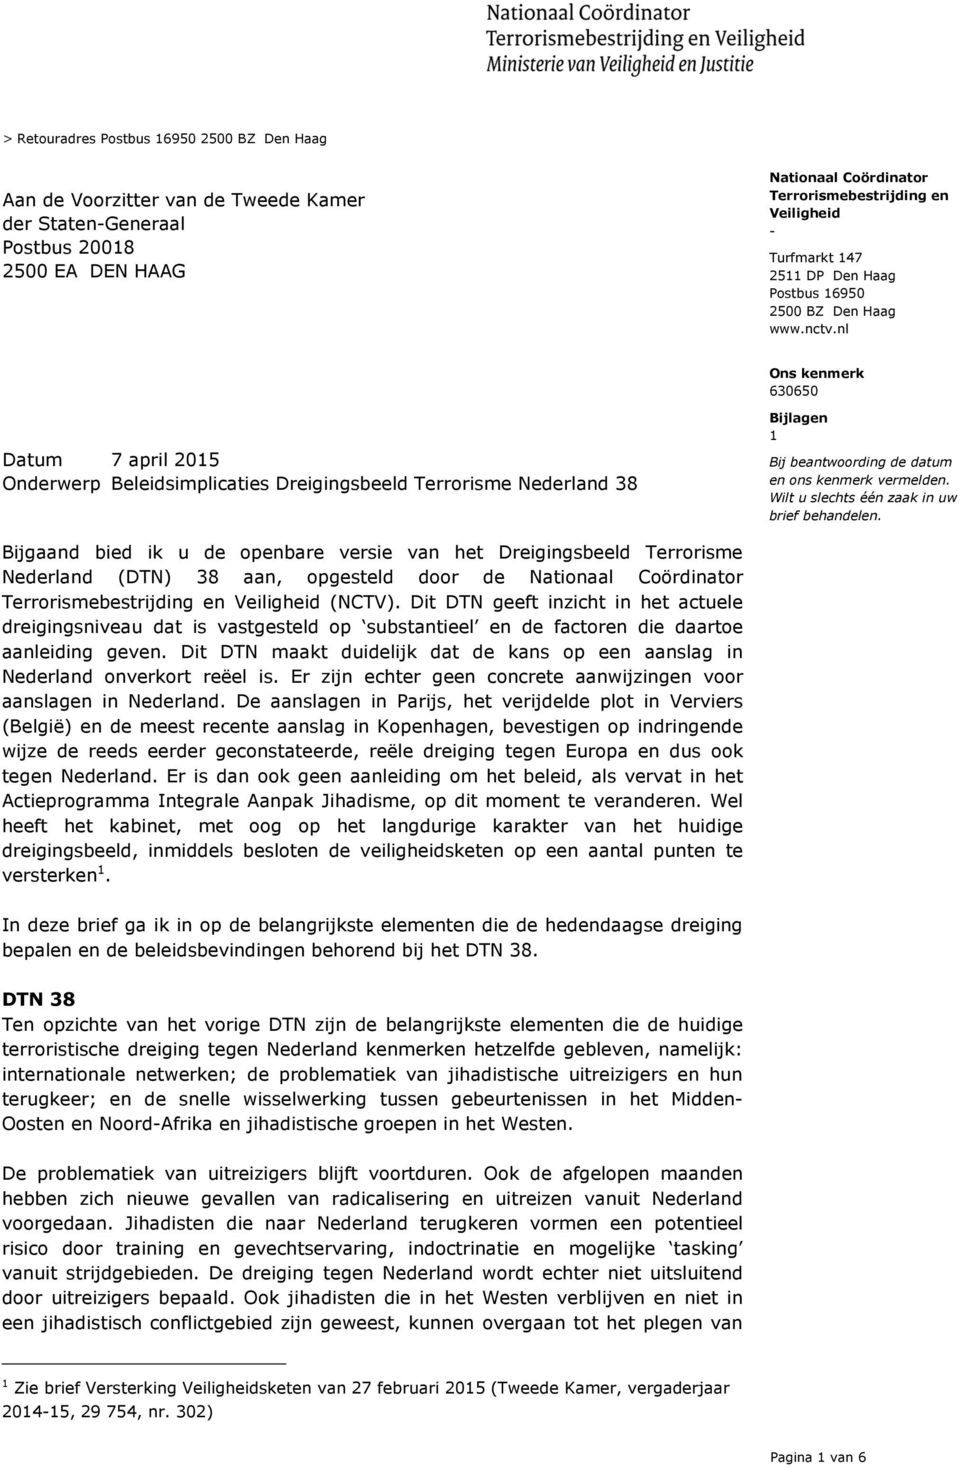 Bijgaand bied ik u de openbare versie van het Dreigingsbeeld Terrorisme Nederland (DTN) 38 aan, opgesteld door de (NCTV).